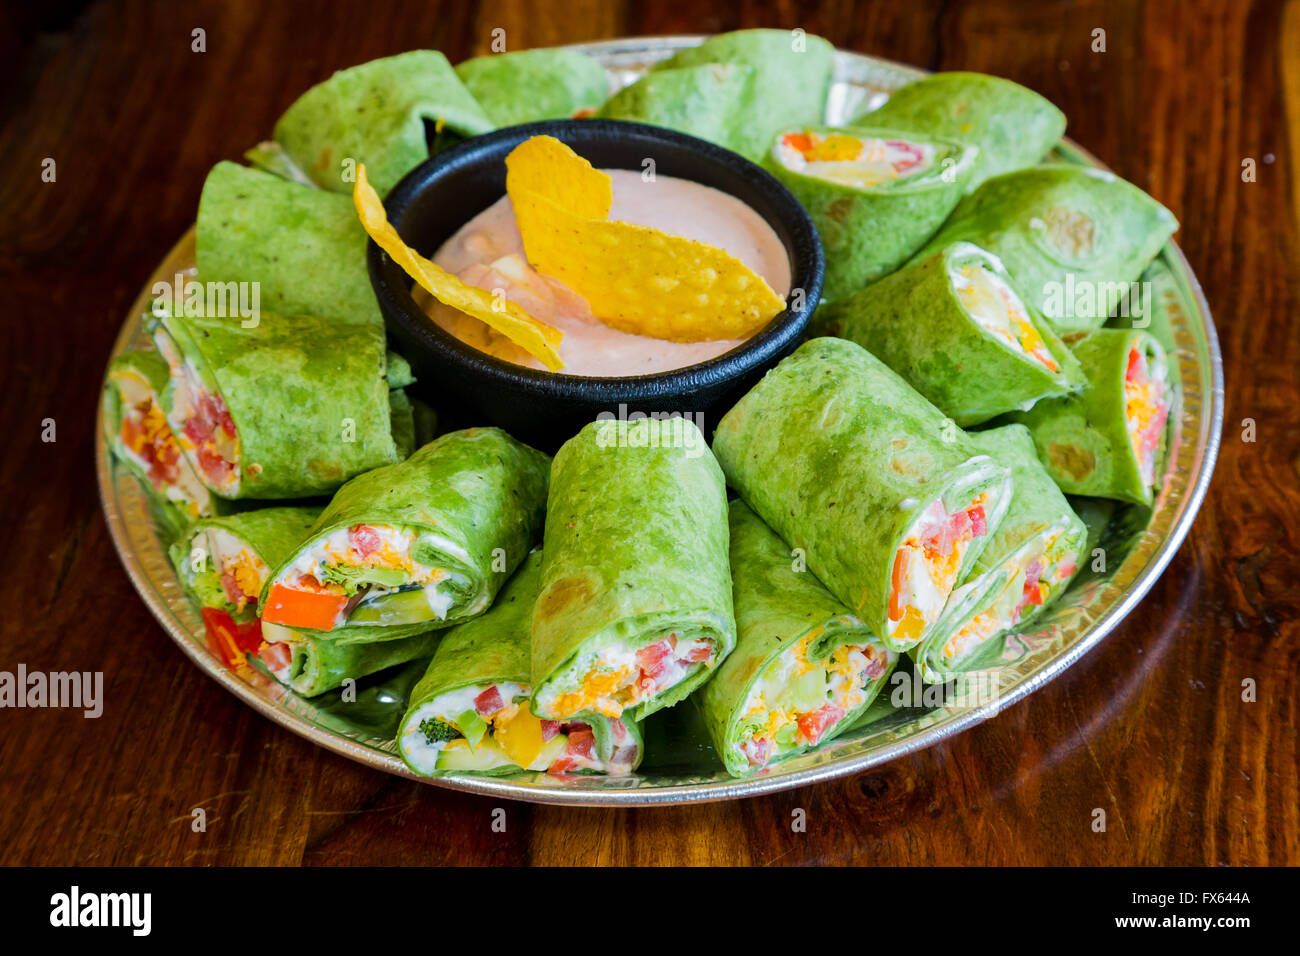 Mexikanisches Restaurant bietet eine glutenfreie Alternative zu ihrer traditionellen Küche mit dieser Vegan Vegetarier vegetarisch wraps. Stockfoto